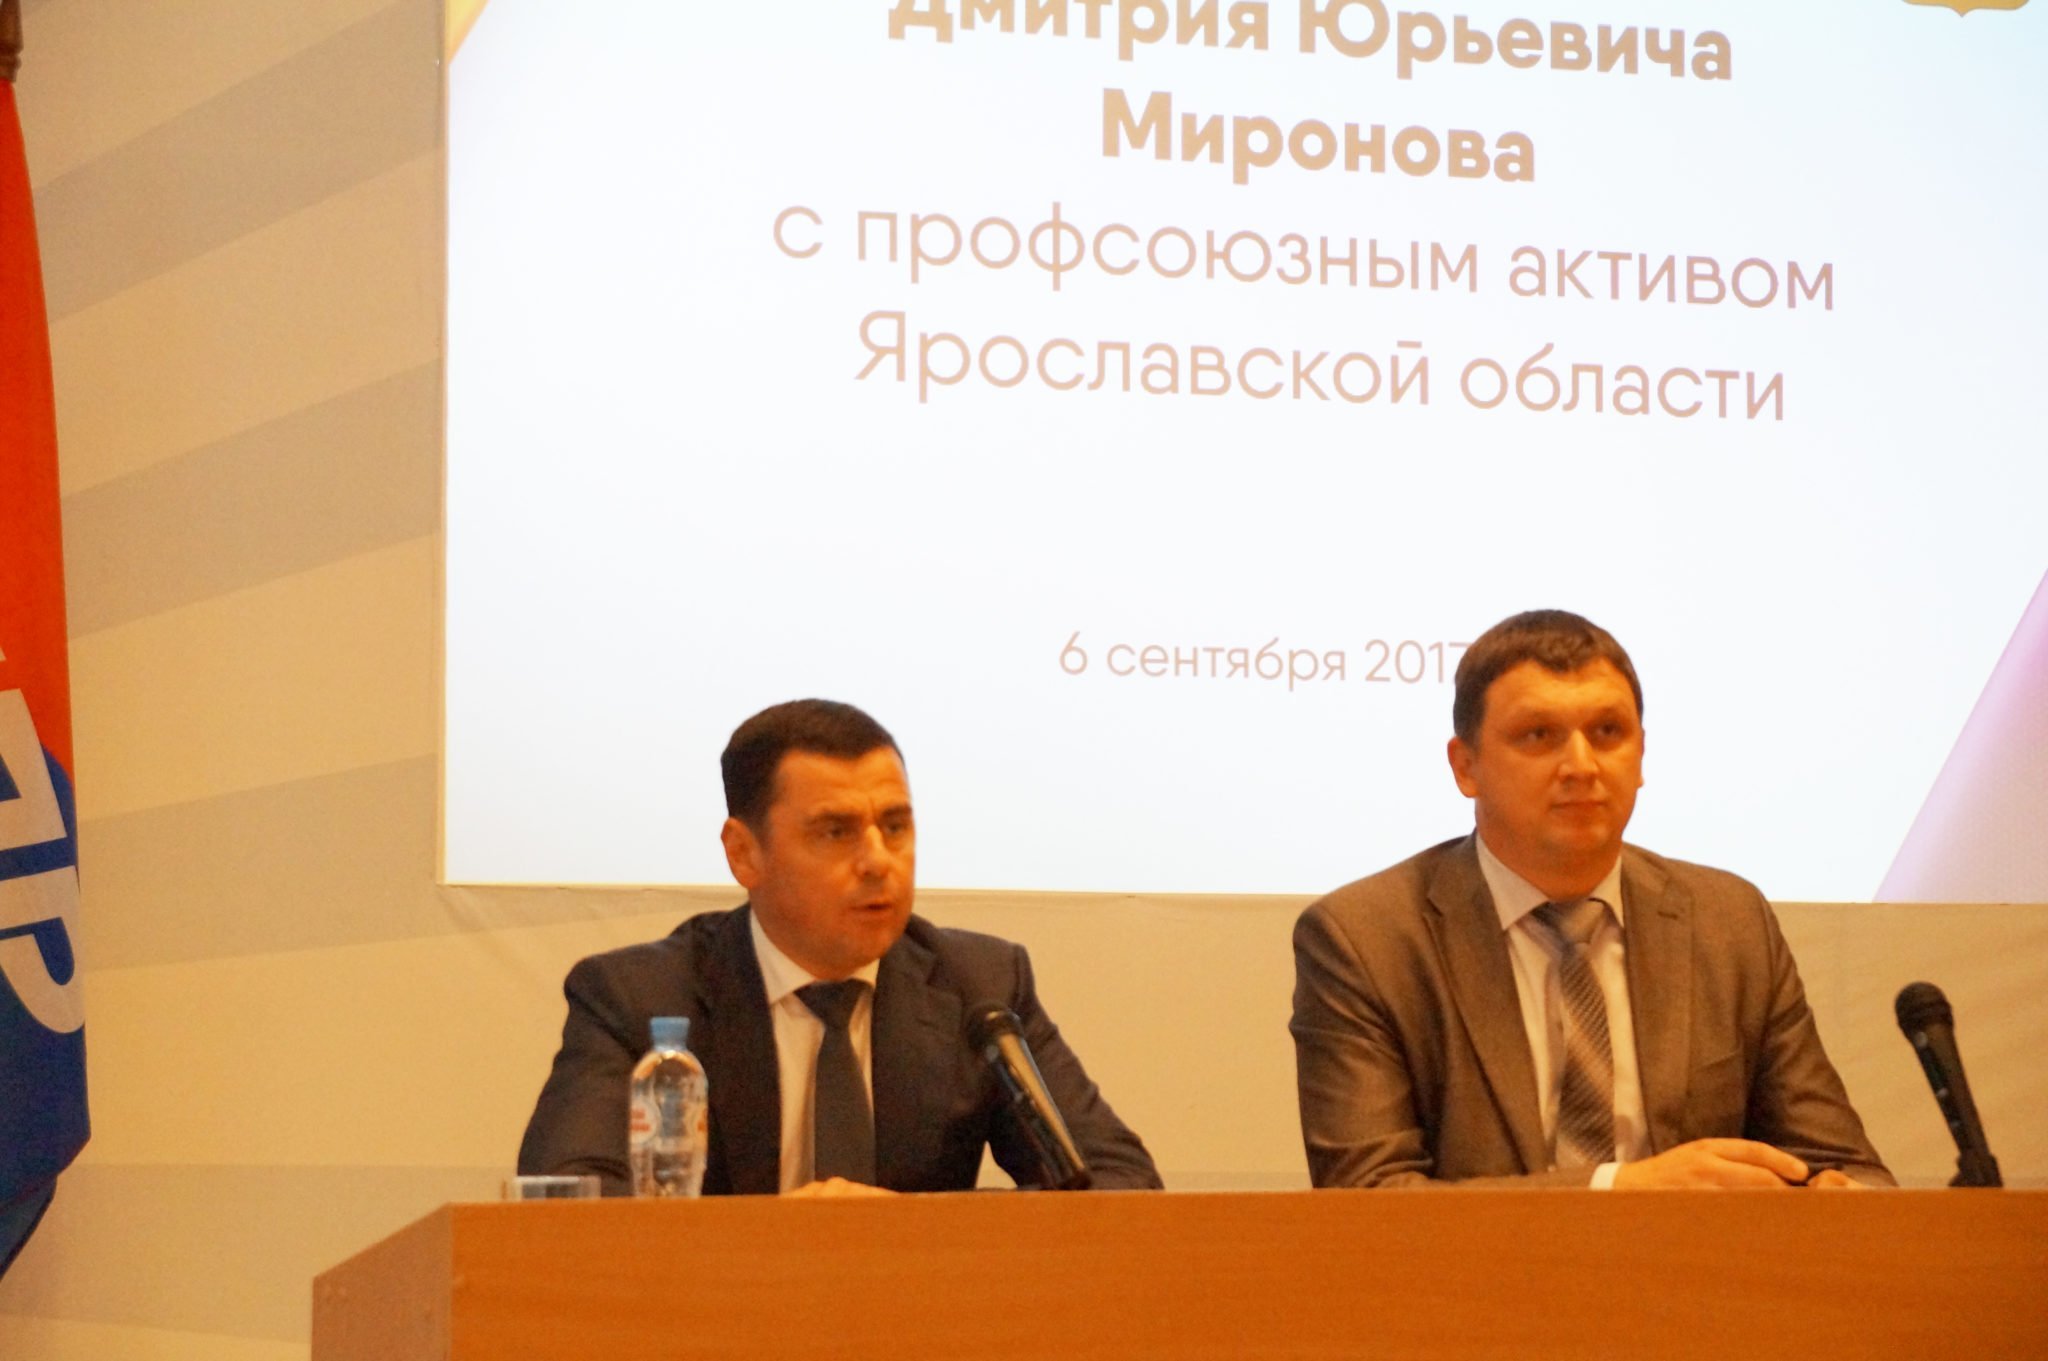 Встреча профсоюзного актива с врио губернатора Дмитрием Мироновым в СМИ